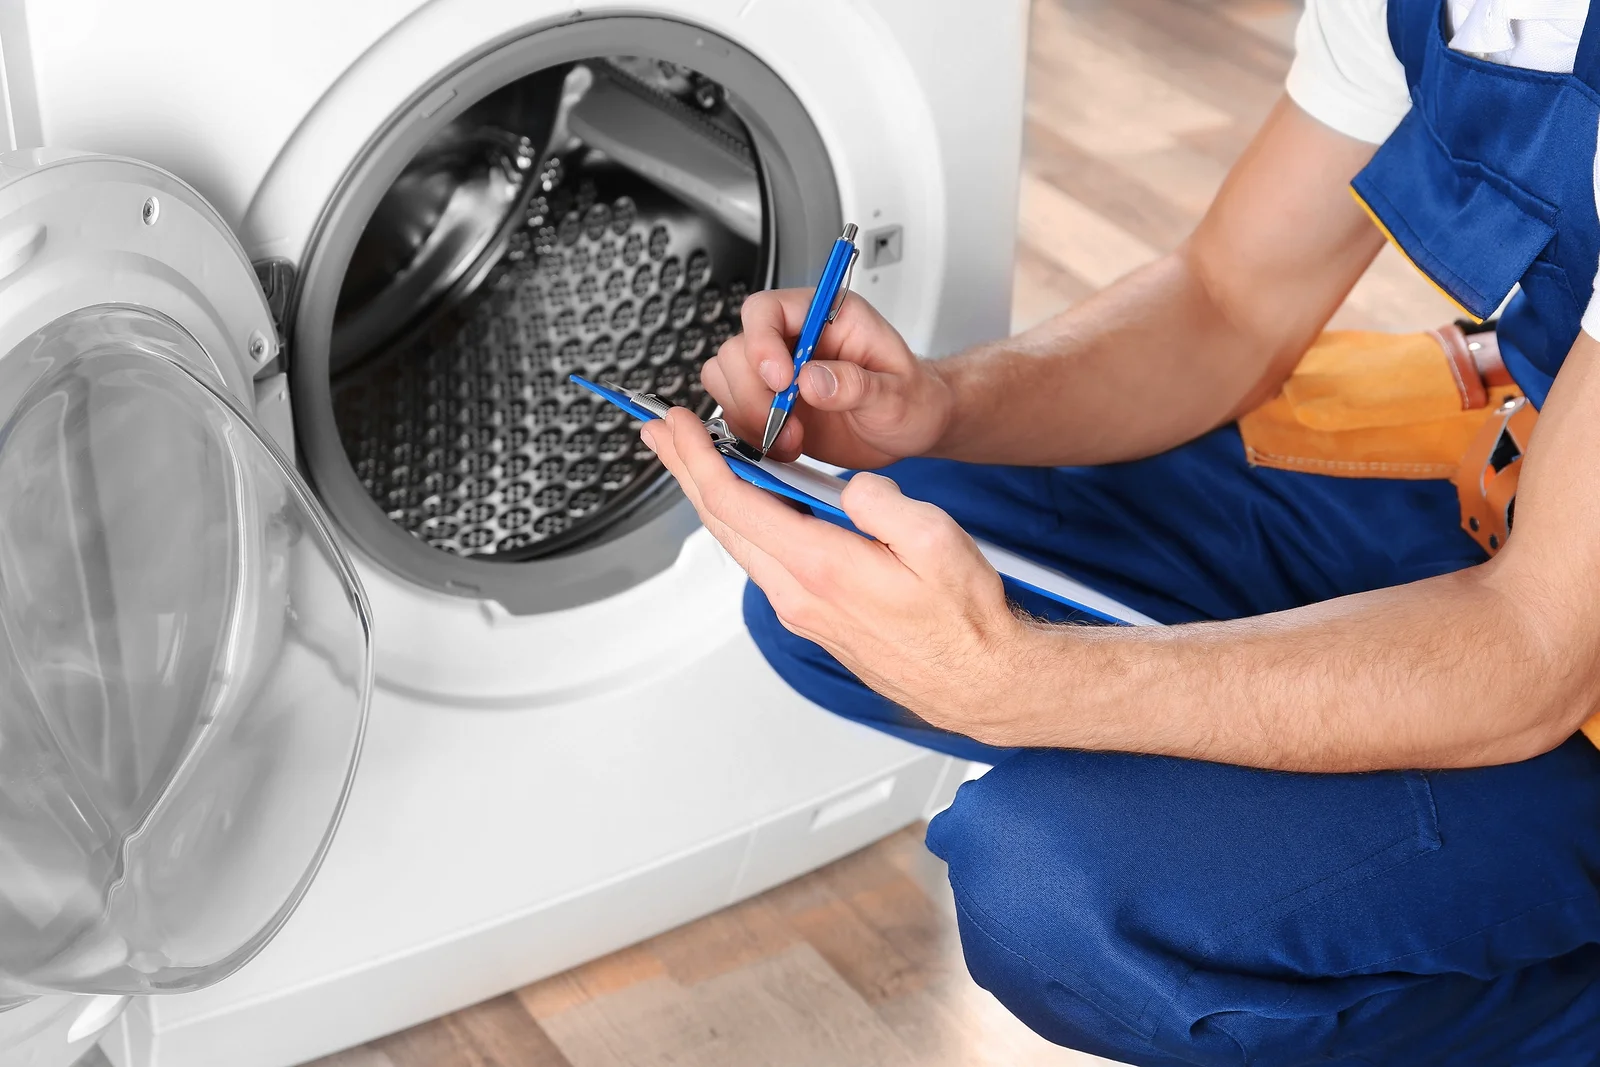 La secadora hace ruido - Causas y posibles soluciones - ONESAT